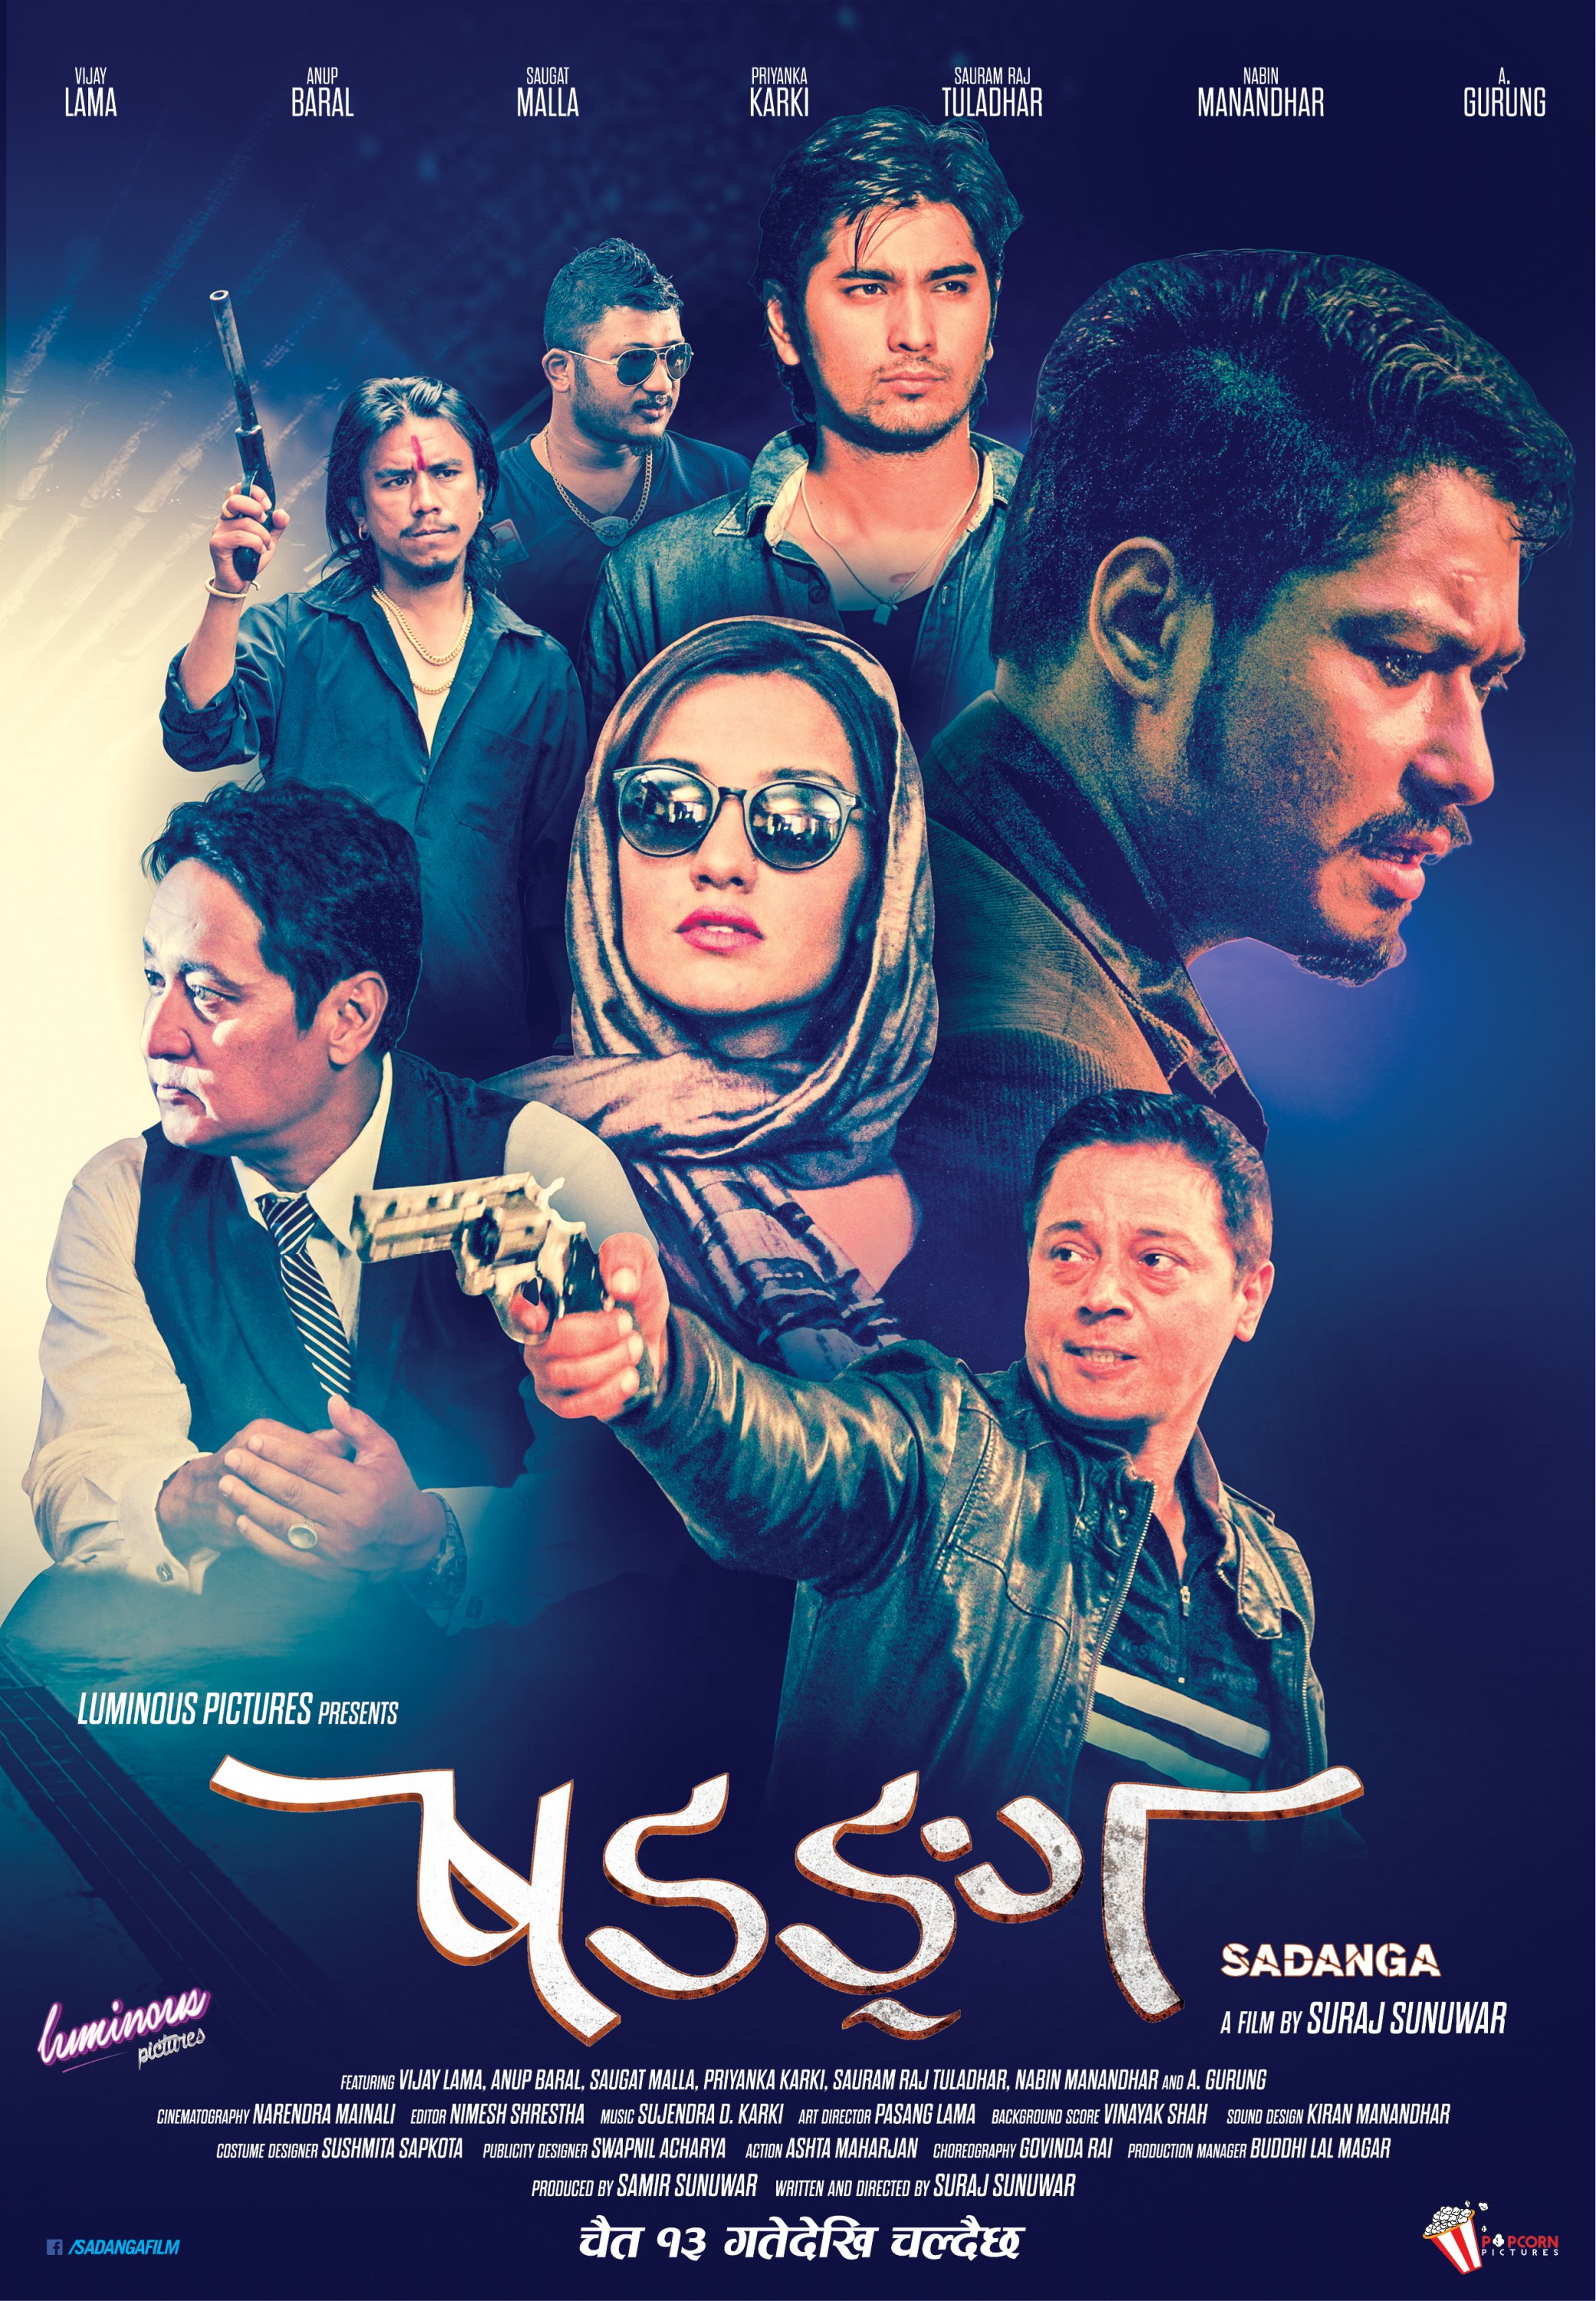 Mega Sized Movie Poster Image for Sadanga (#2 of 6)